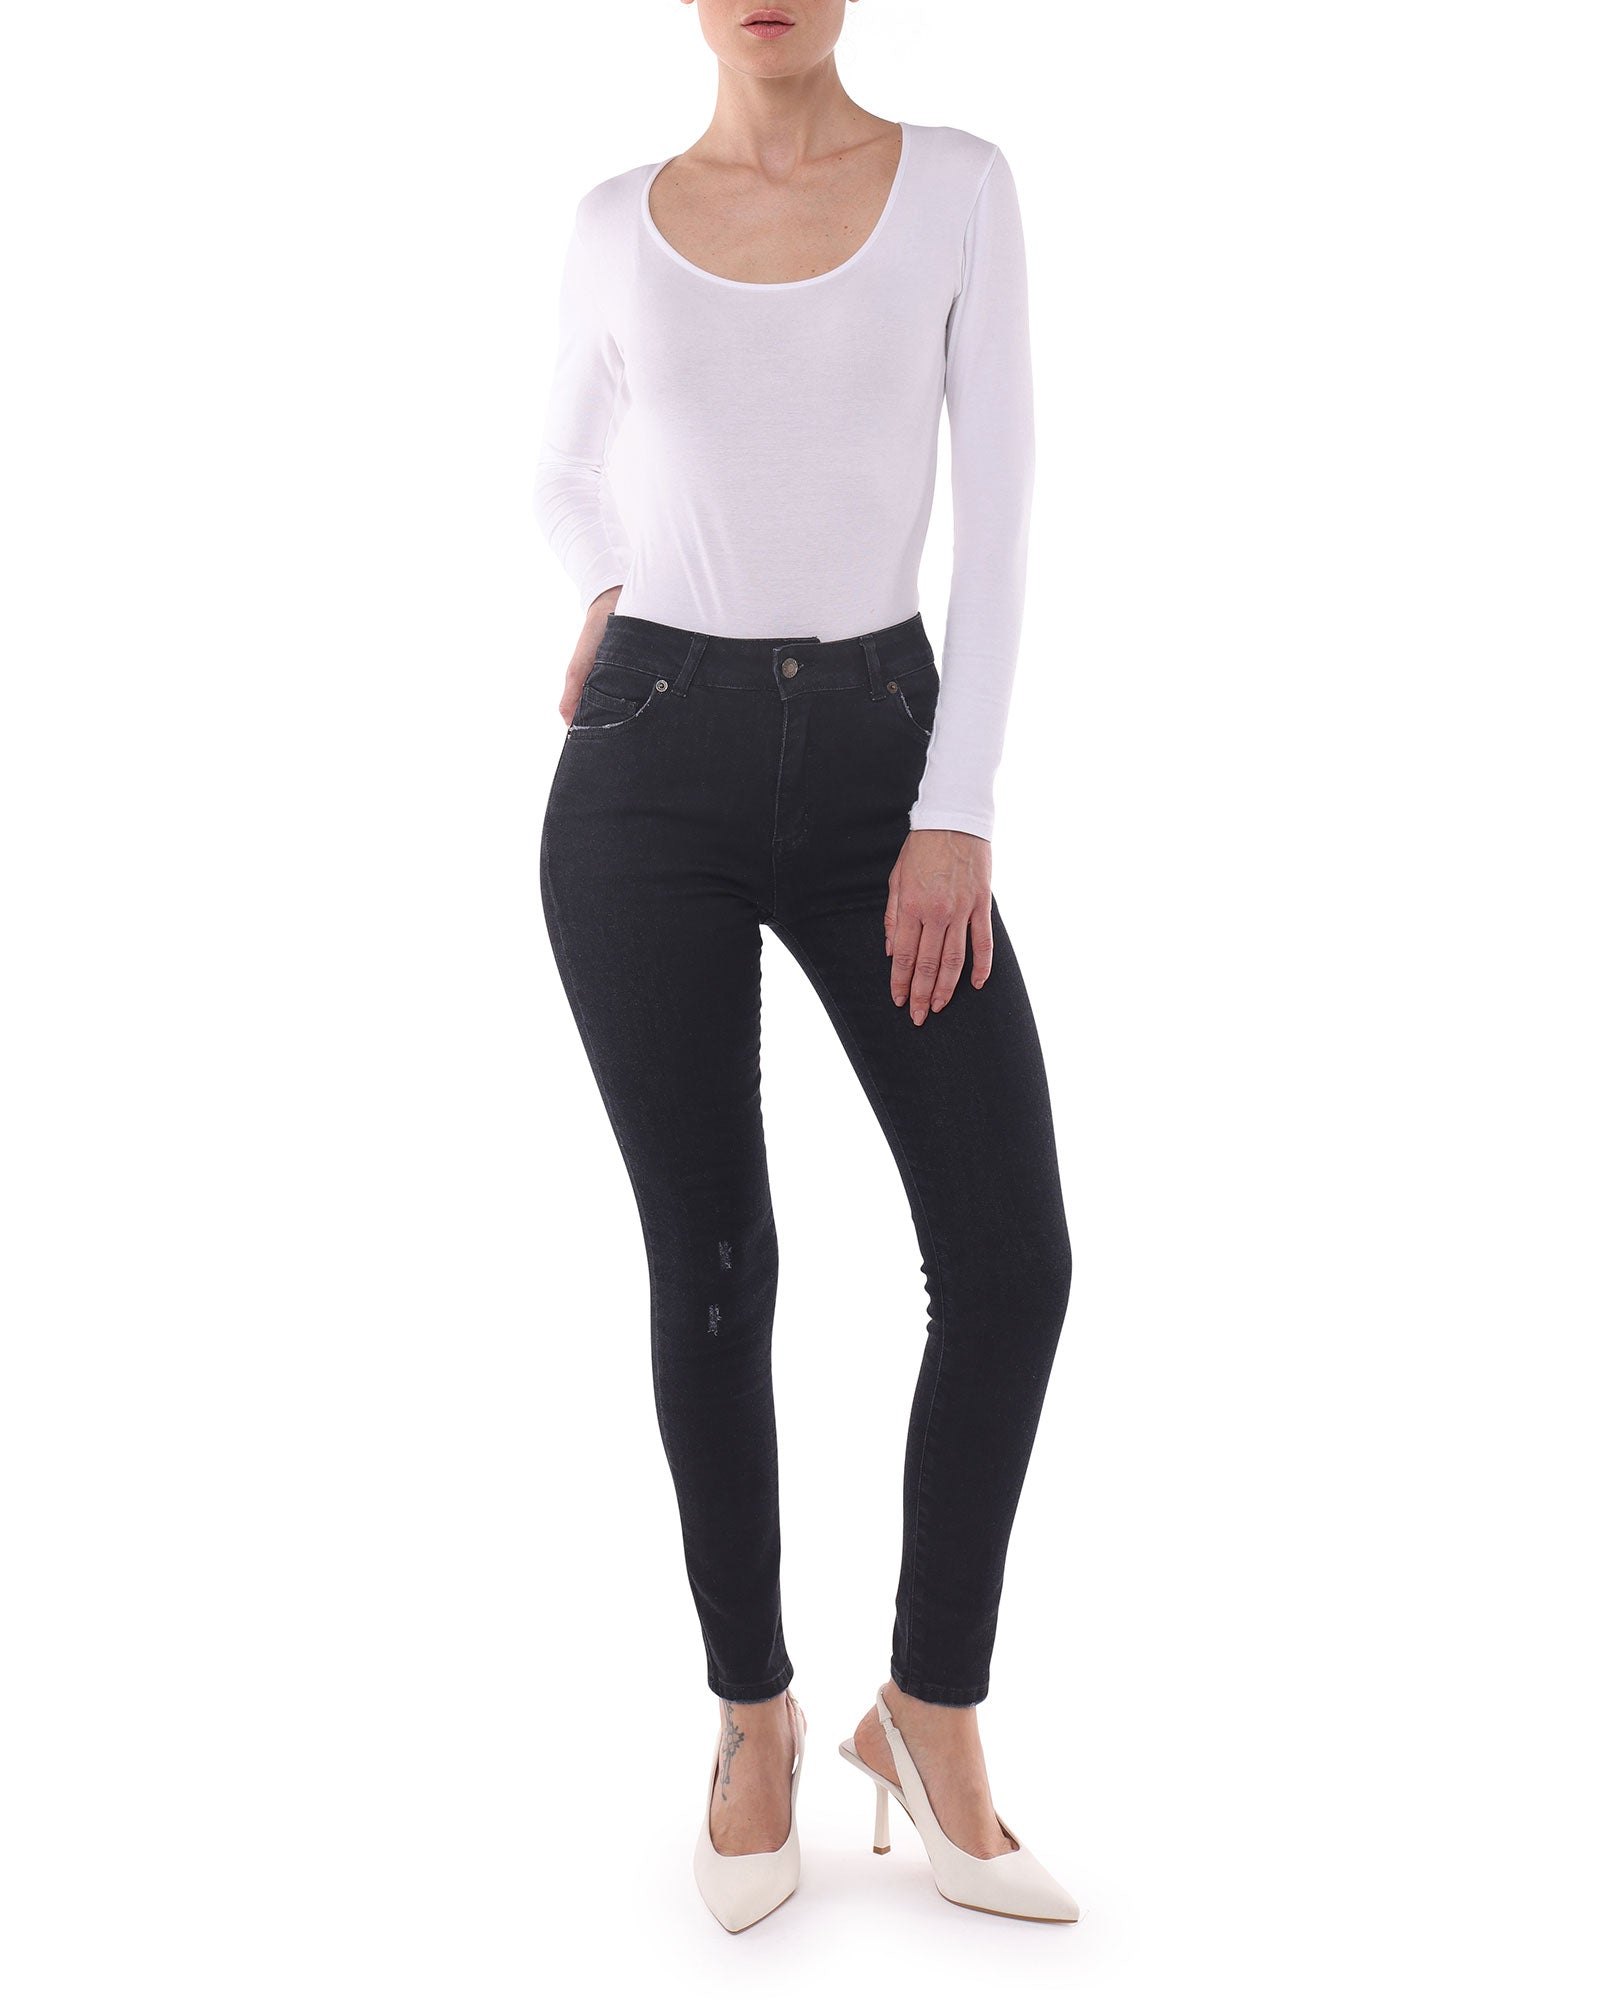 Jeans Donna Nero, Slim Fit, Vita Media - Made in Italy